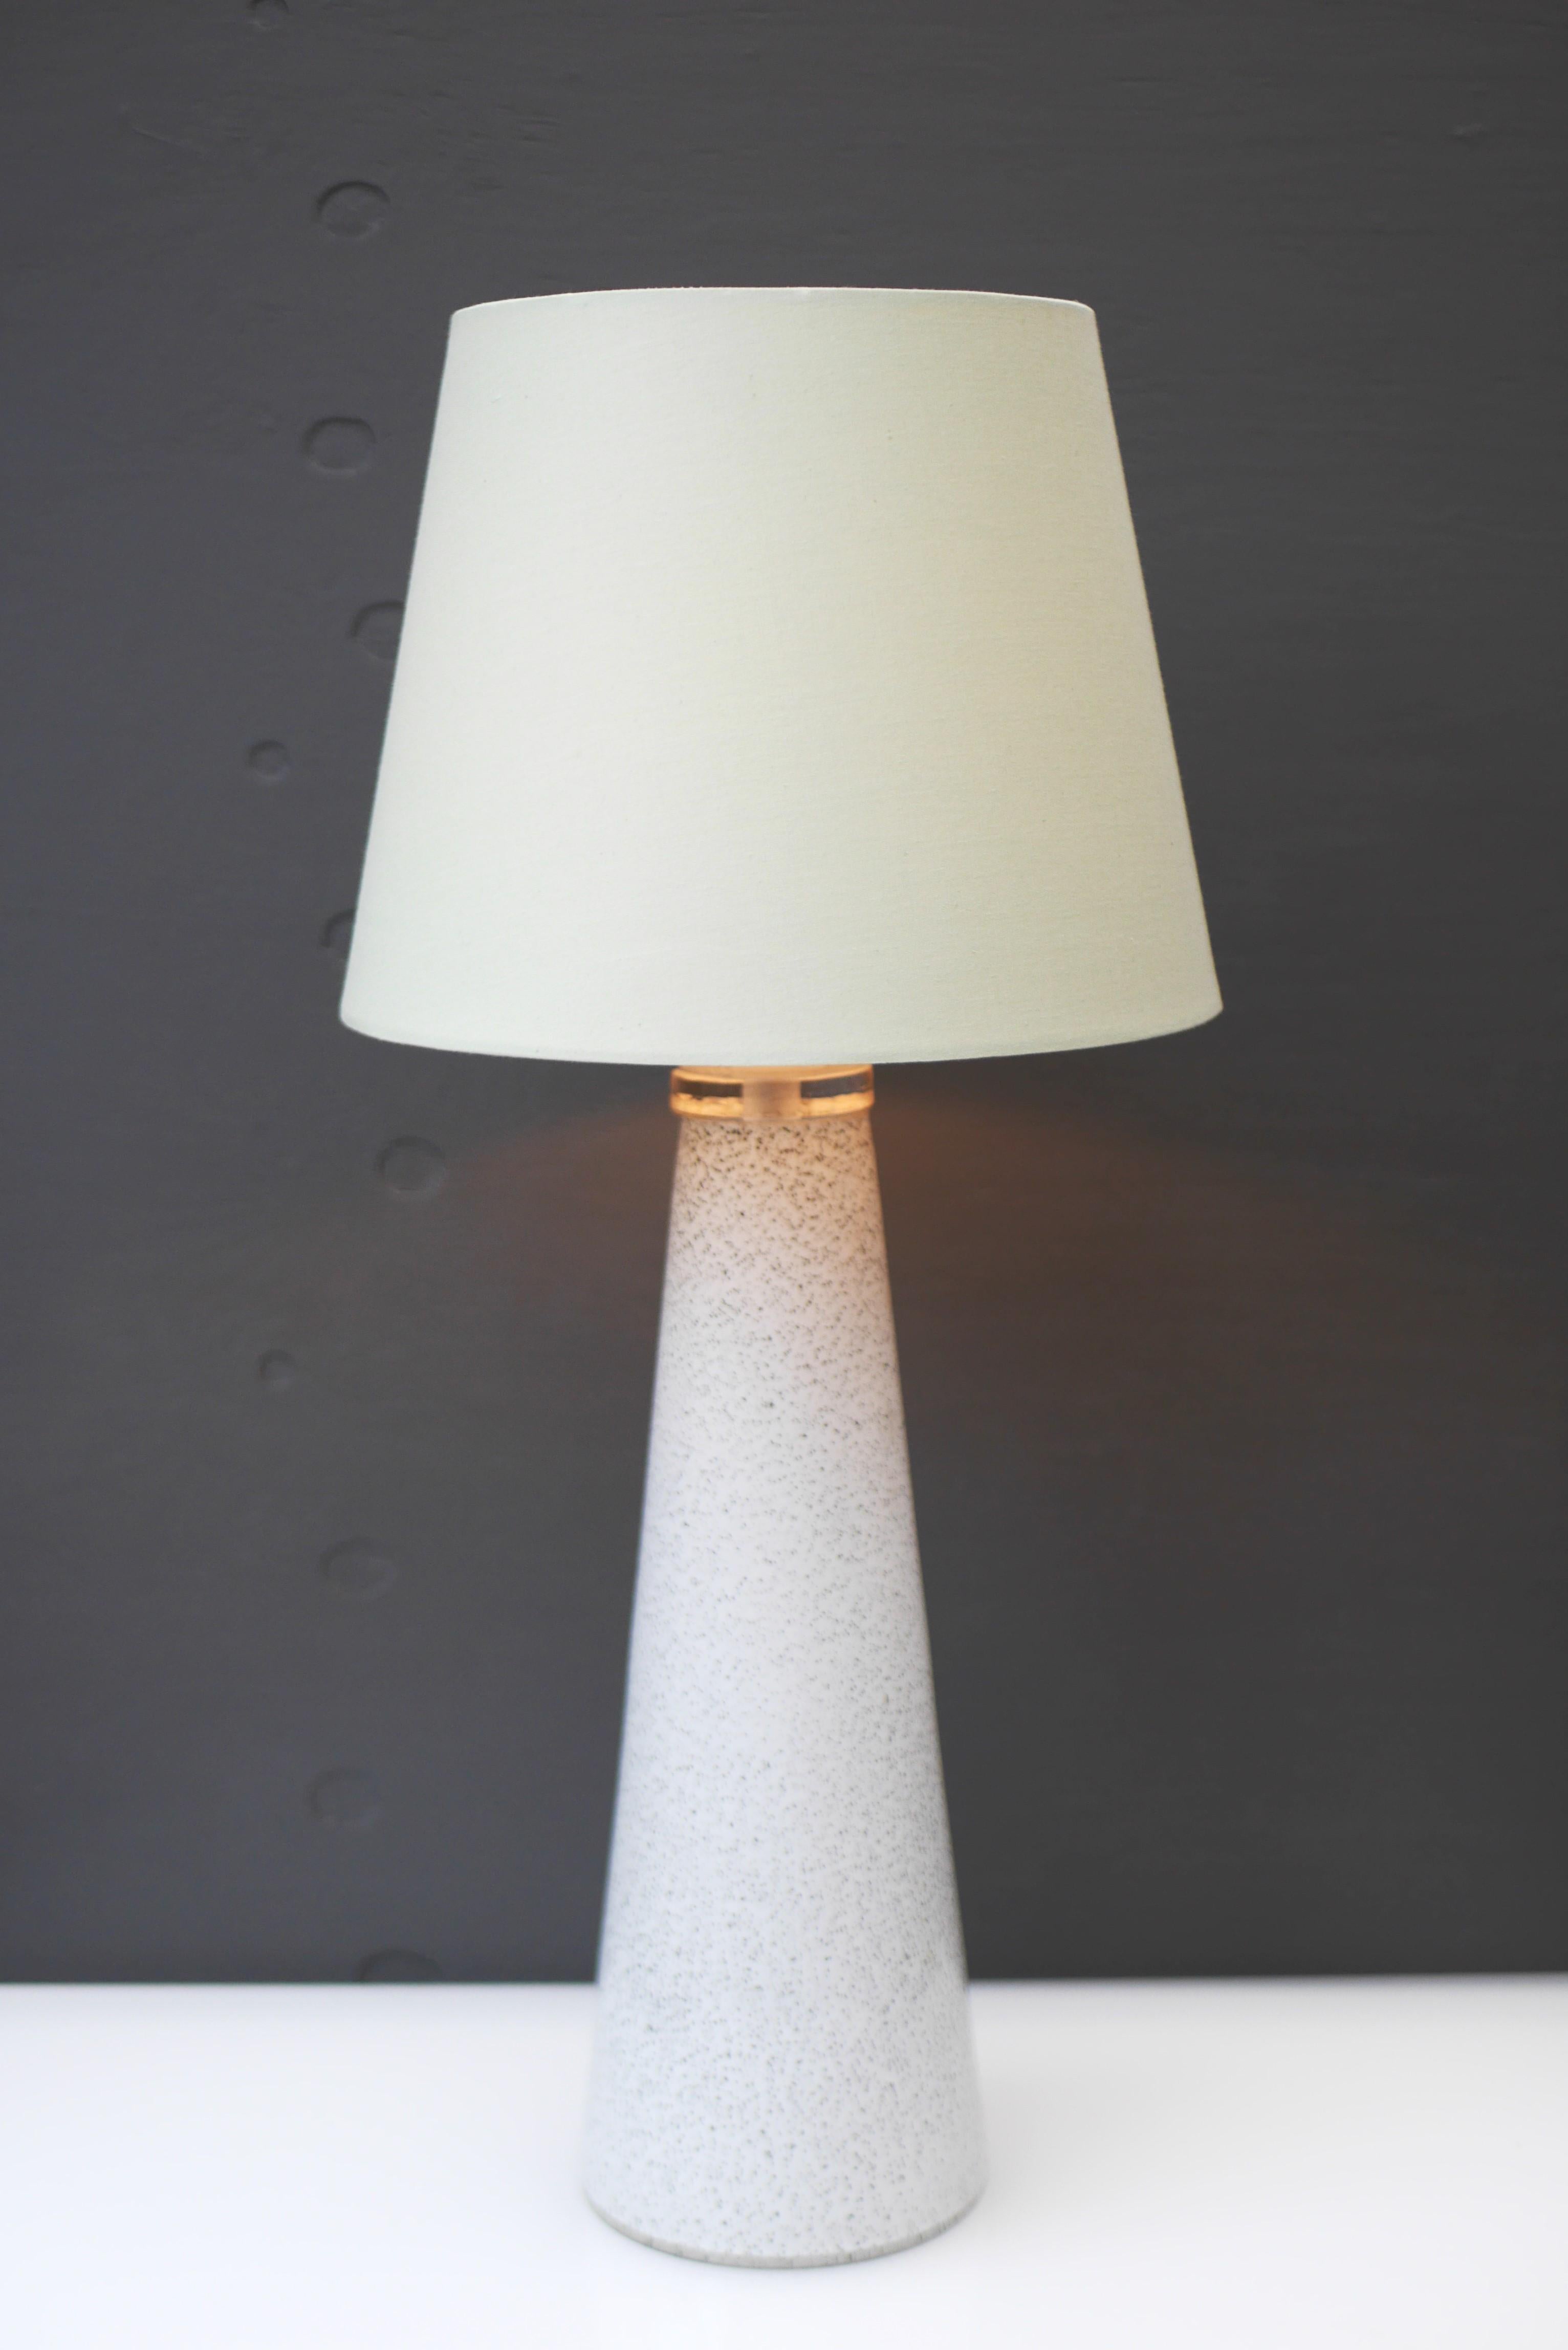 An elegant glass art table lamp made by Bengt Orup for Hyllinge Glasbruk, Sweden For Sale 5